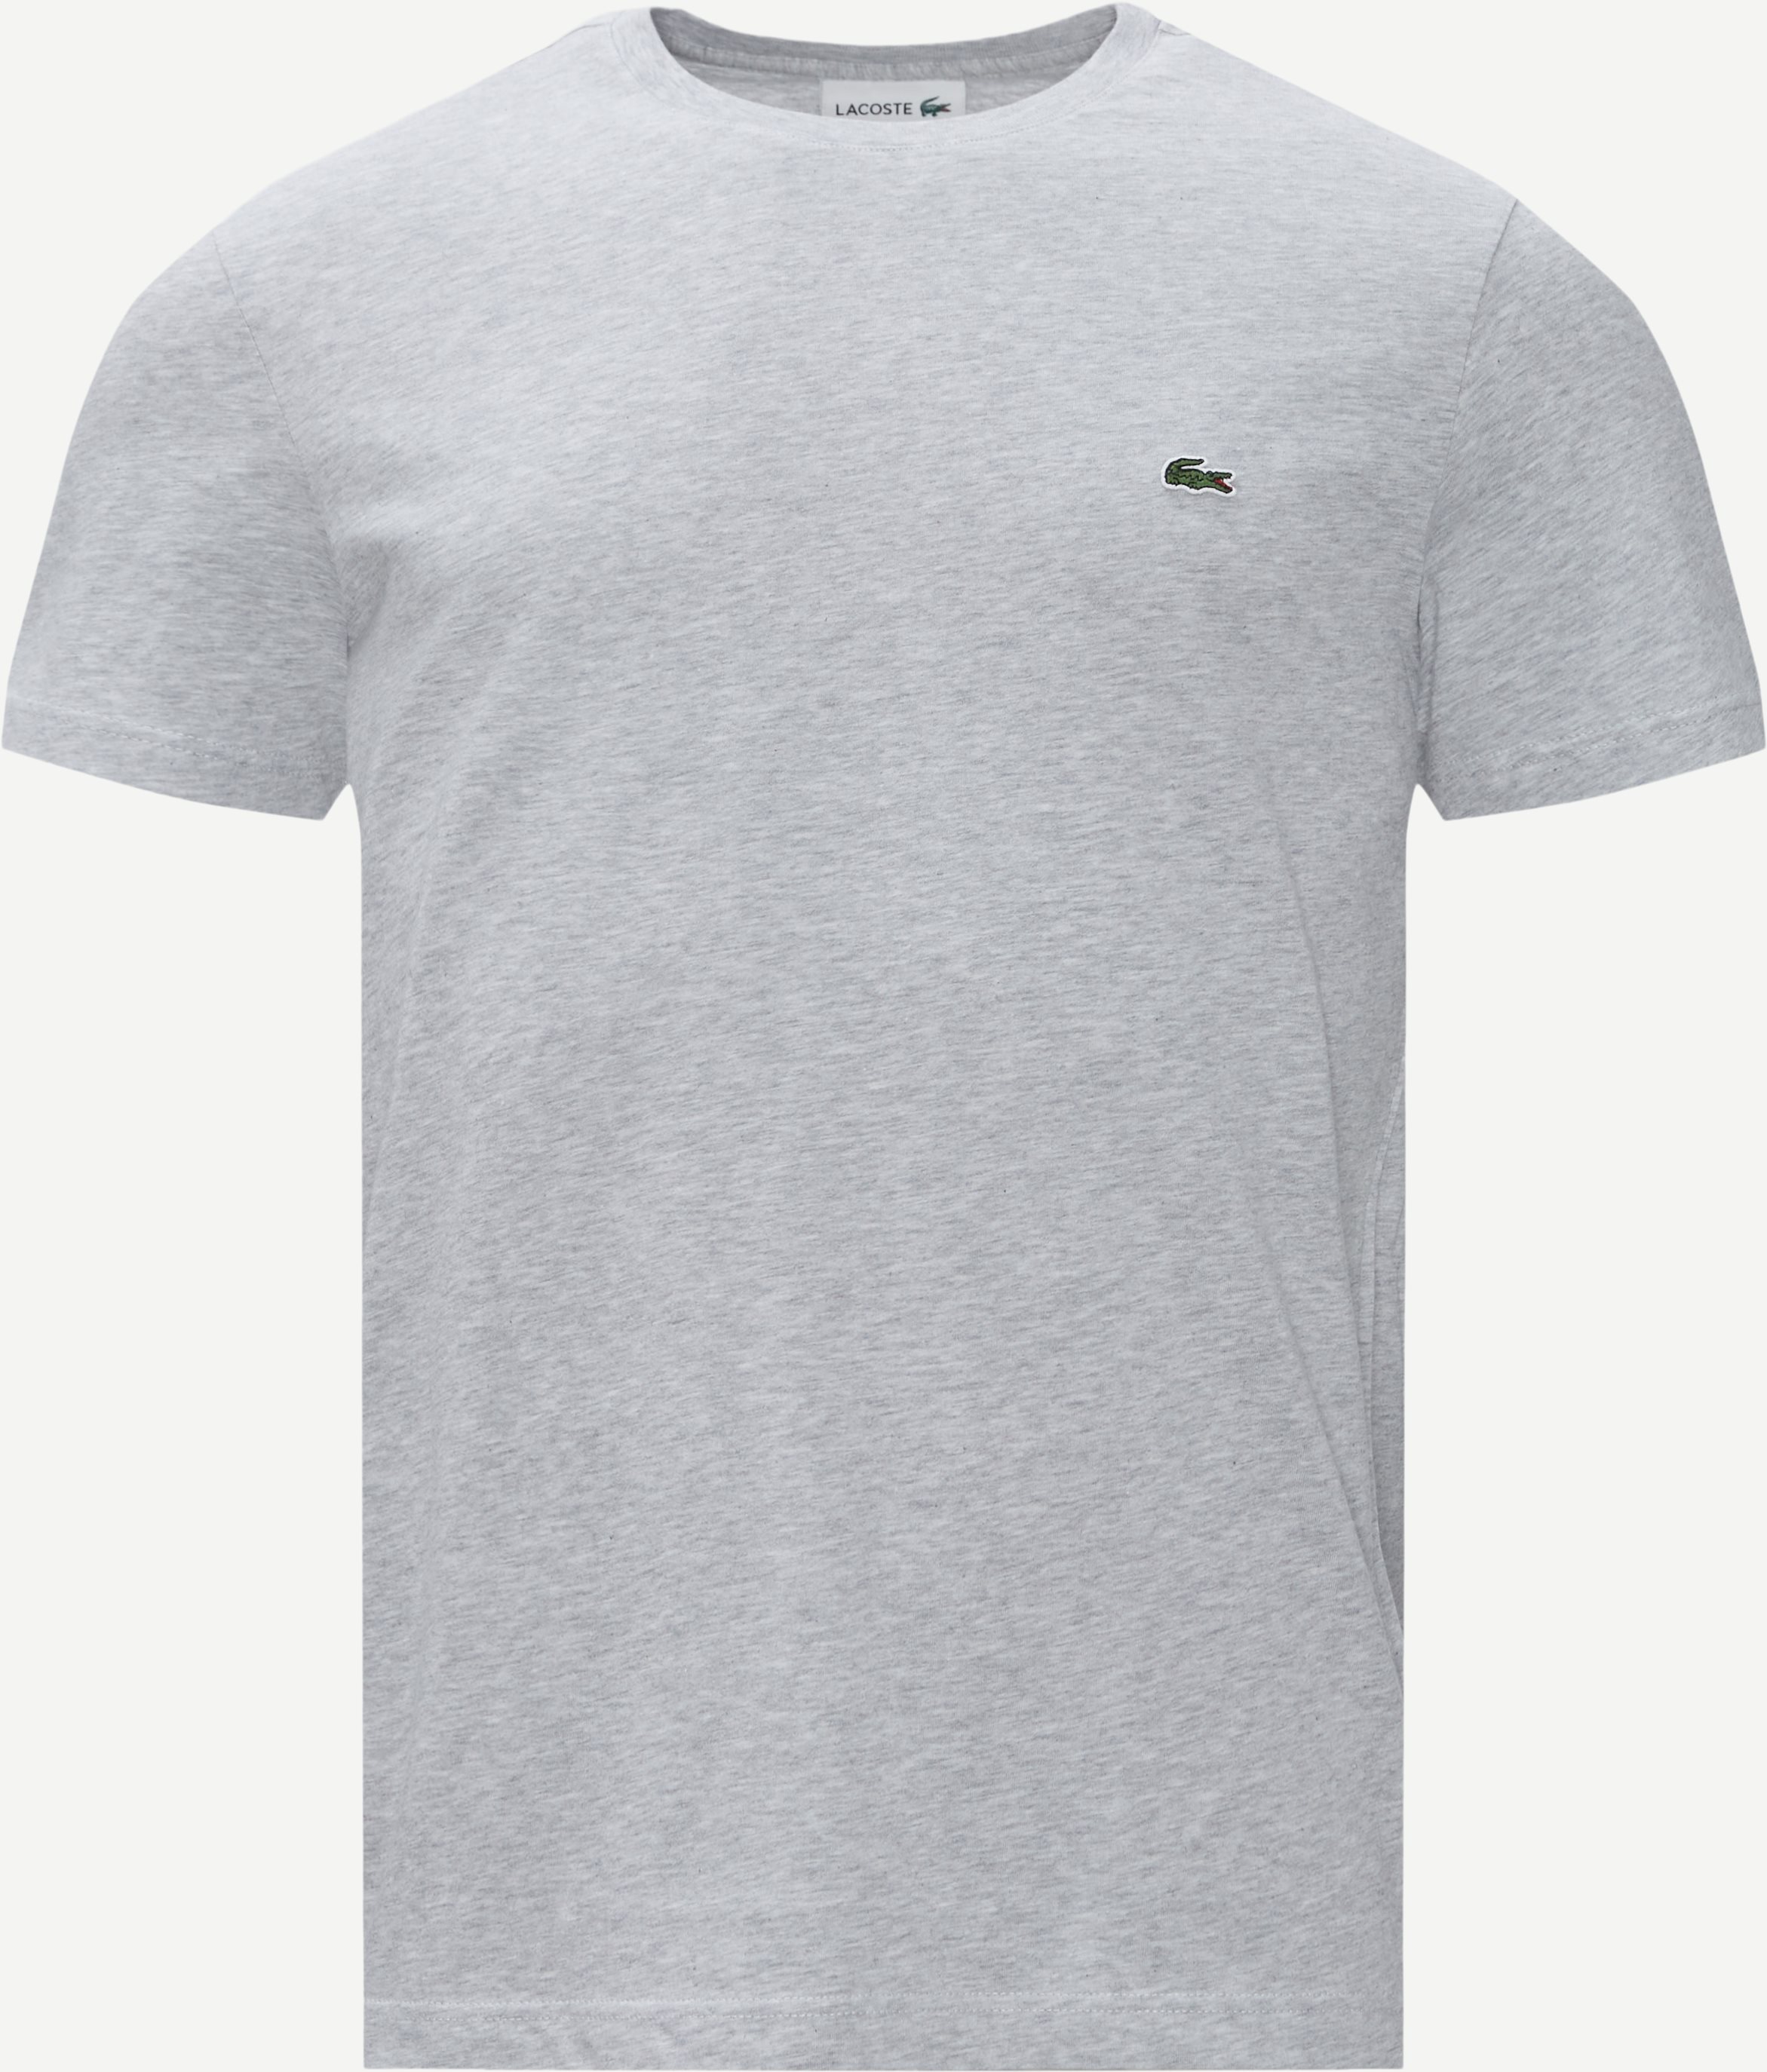 T-shirt - T-shirts - Regular fit - Grå